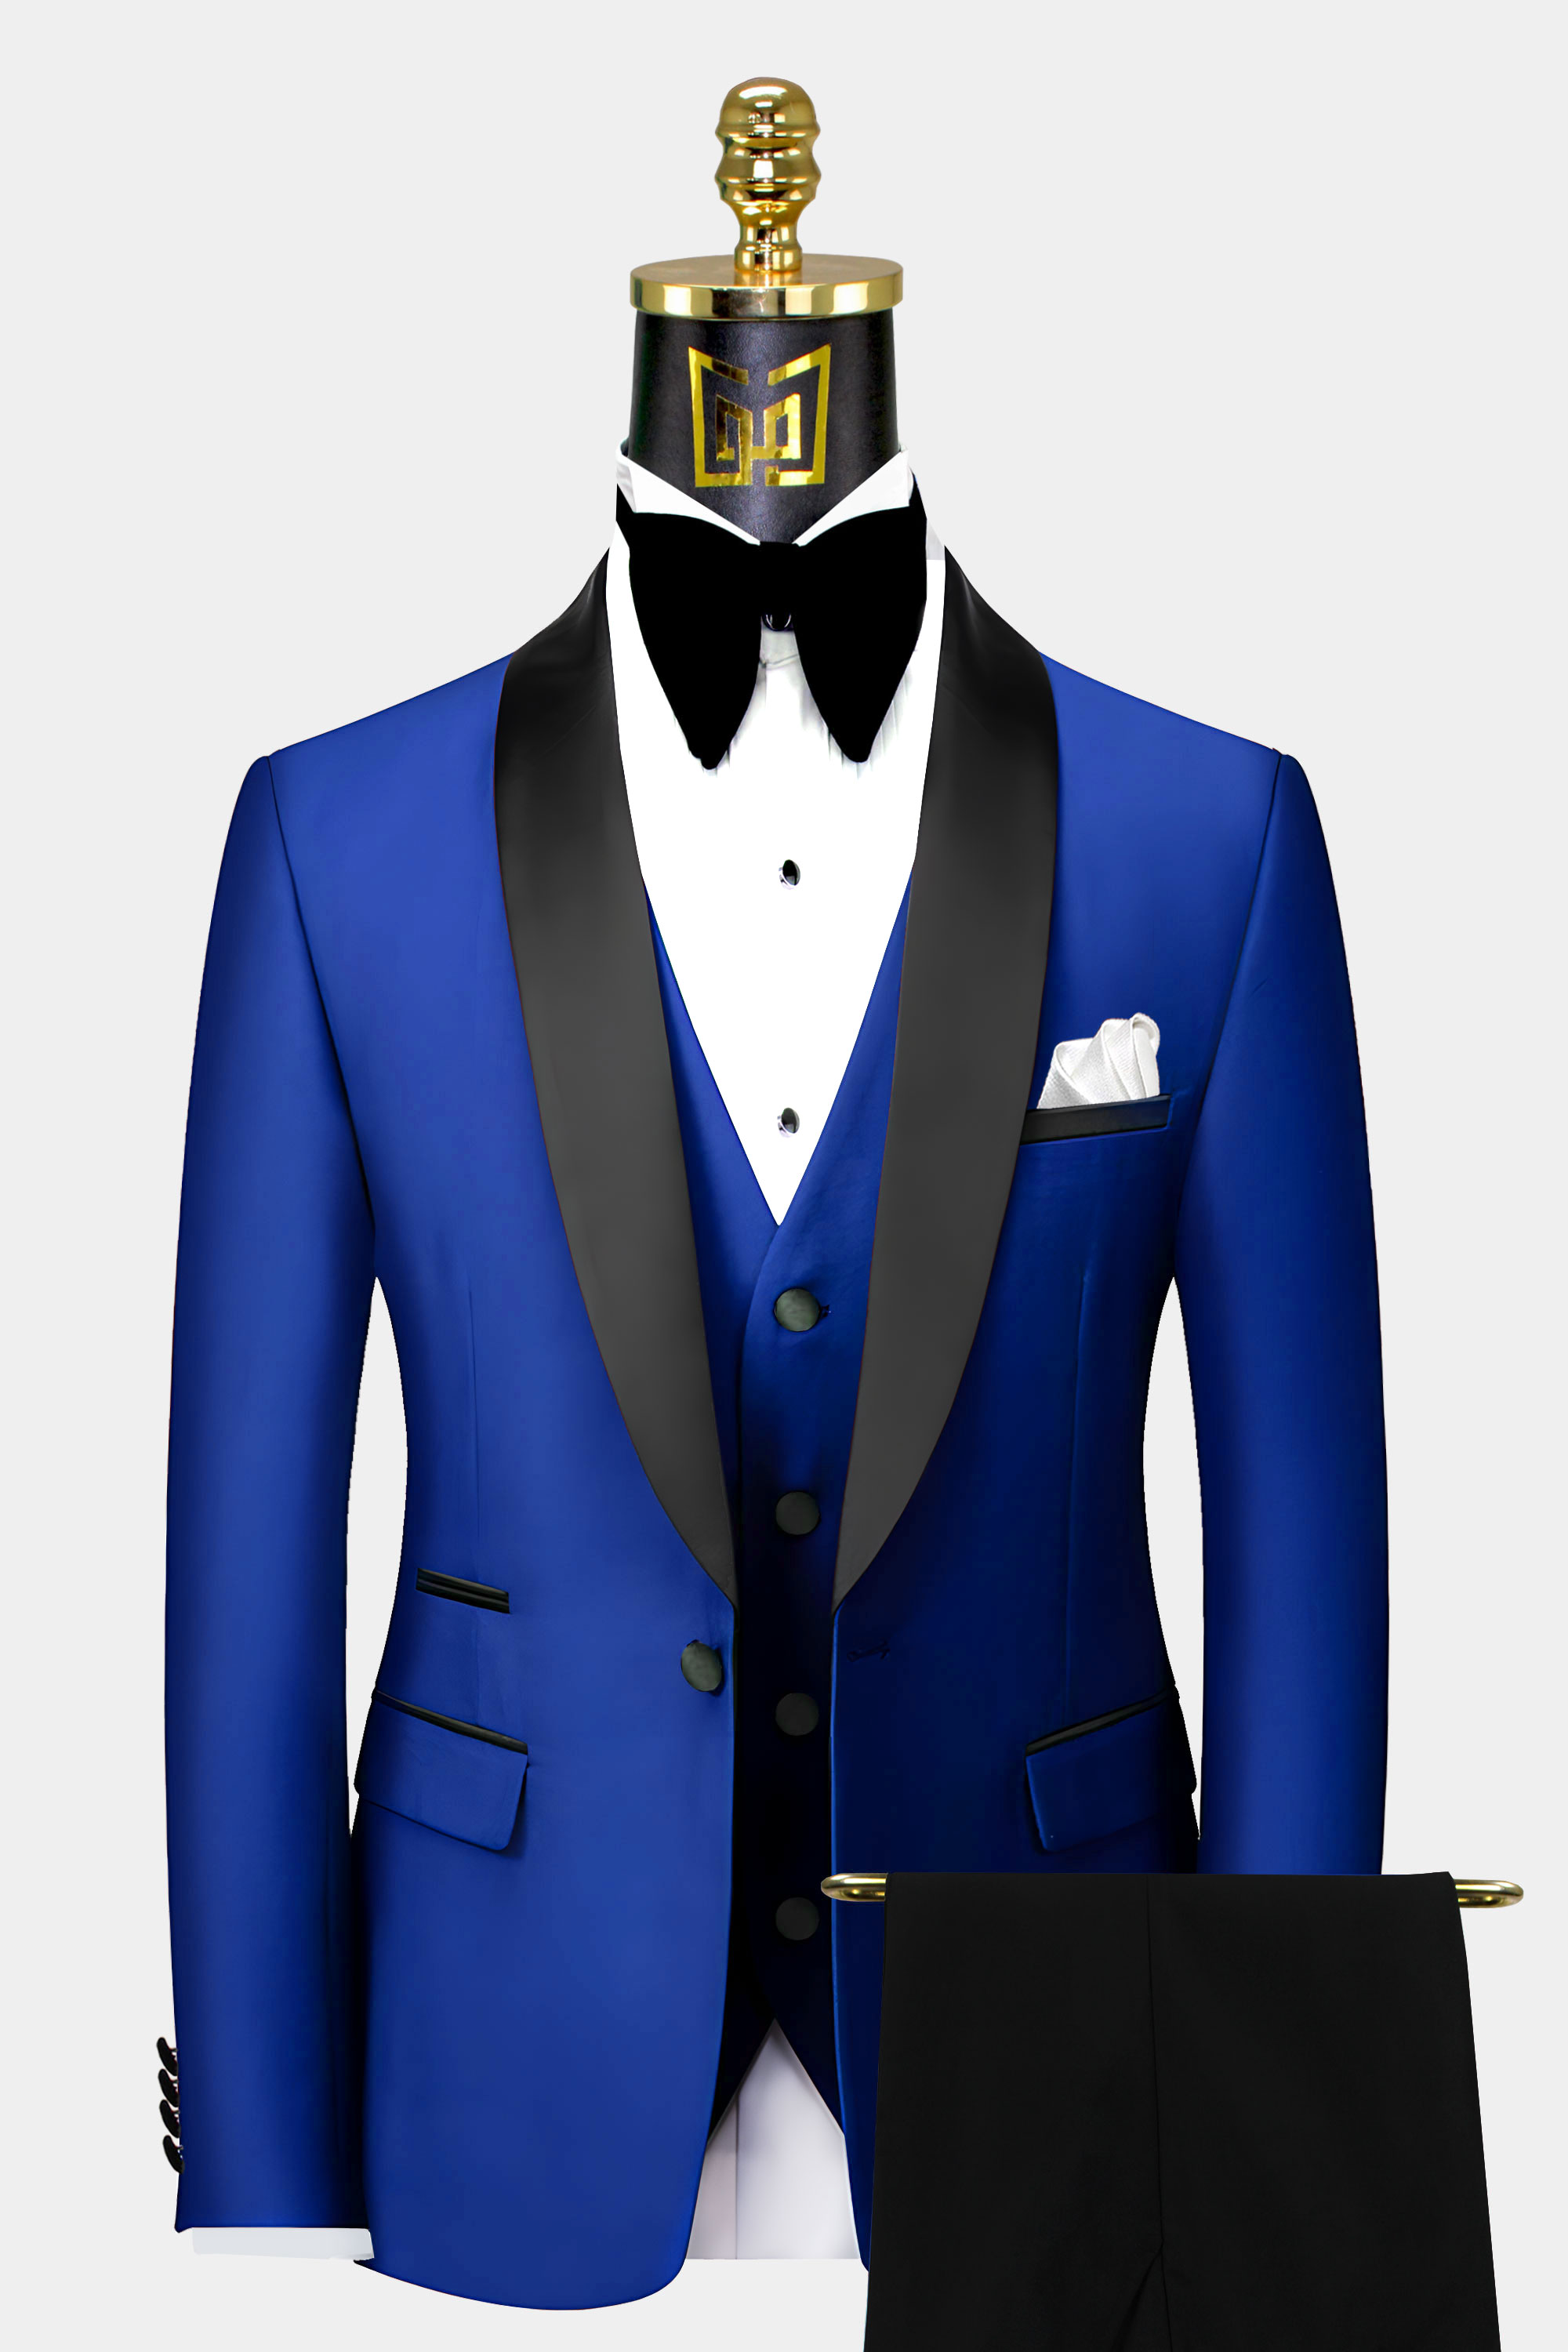 Royal Blue Tuxedo Suit - photos and vectors